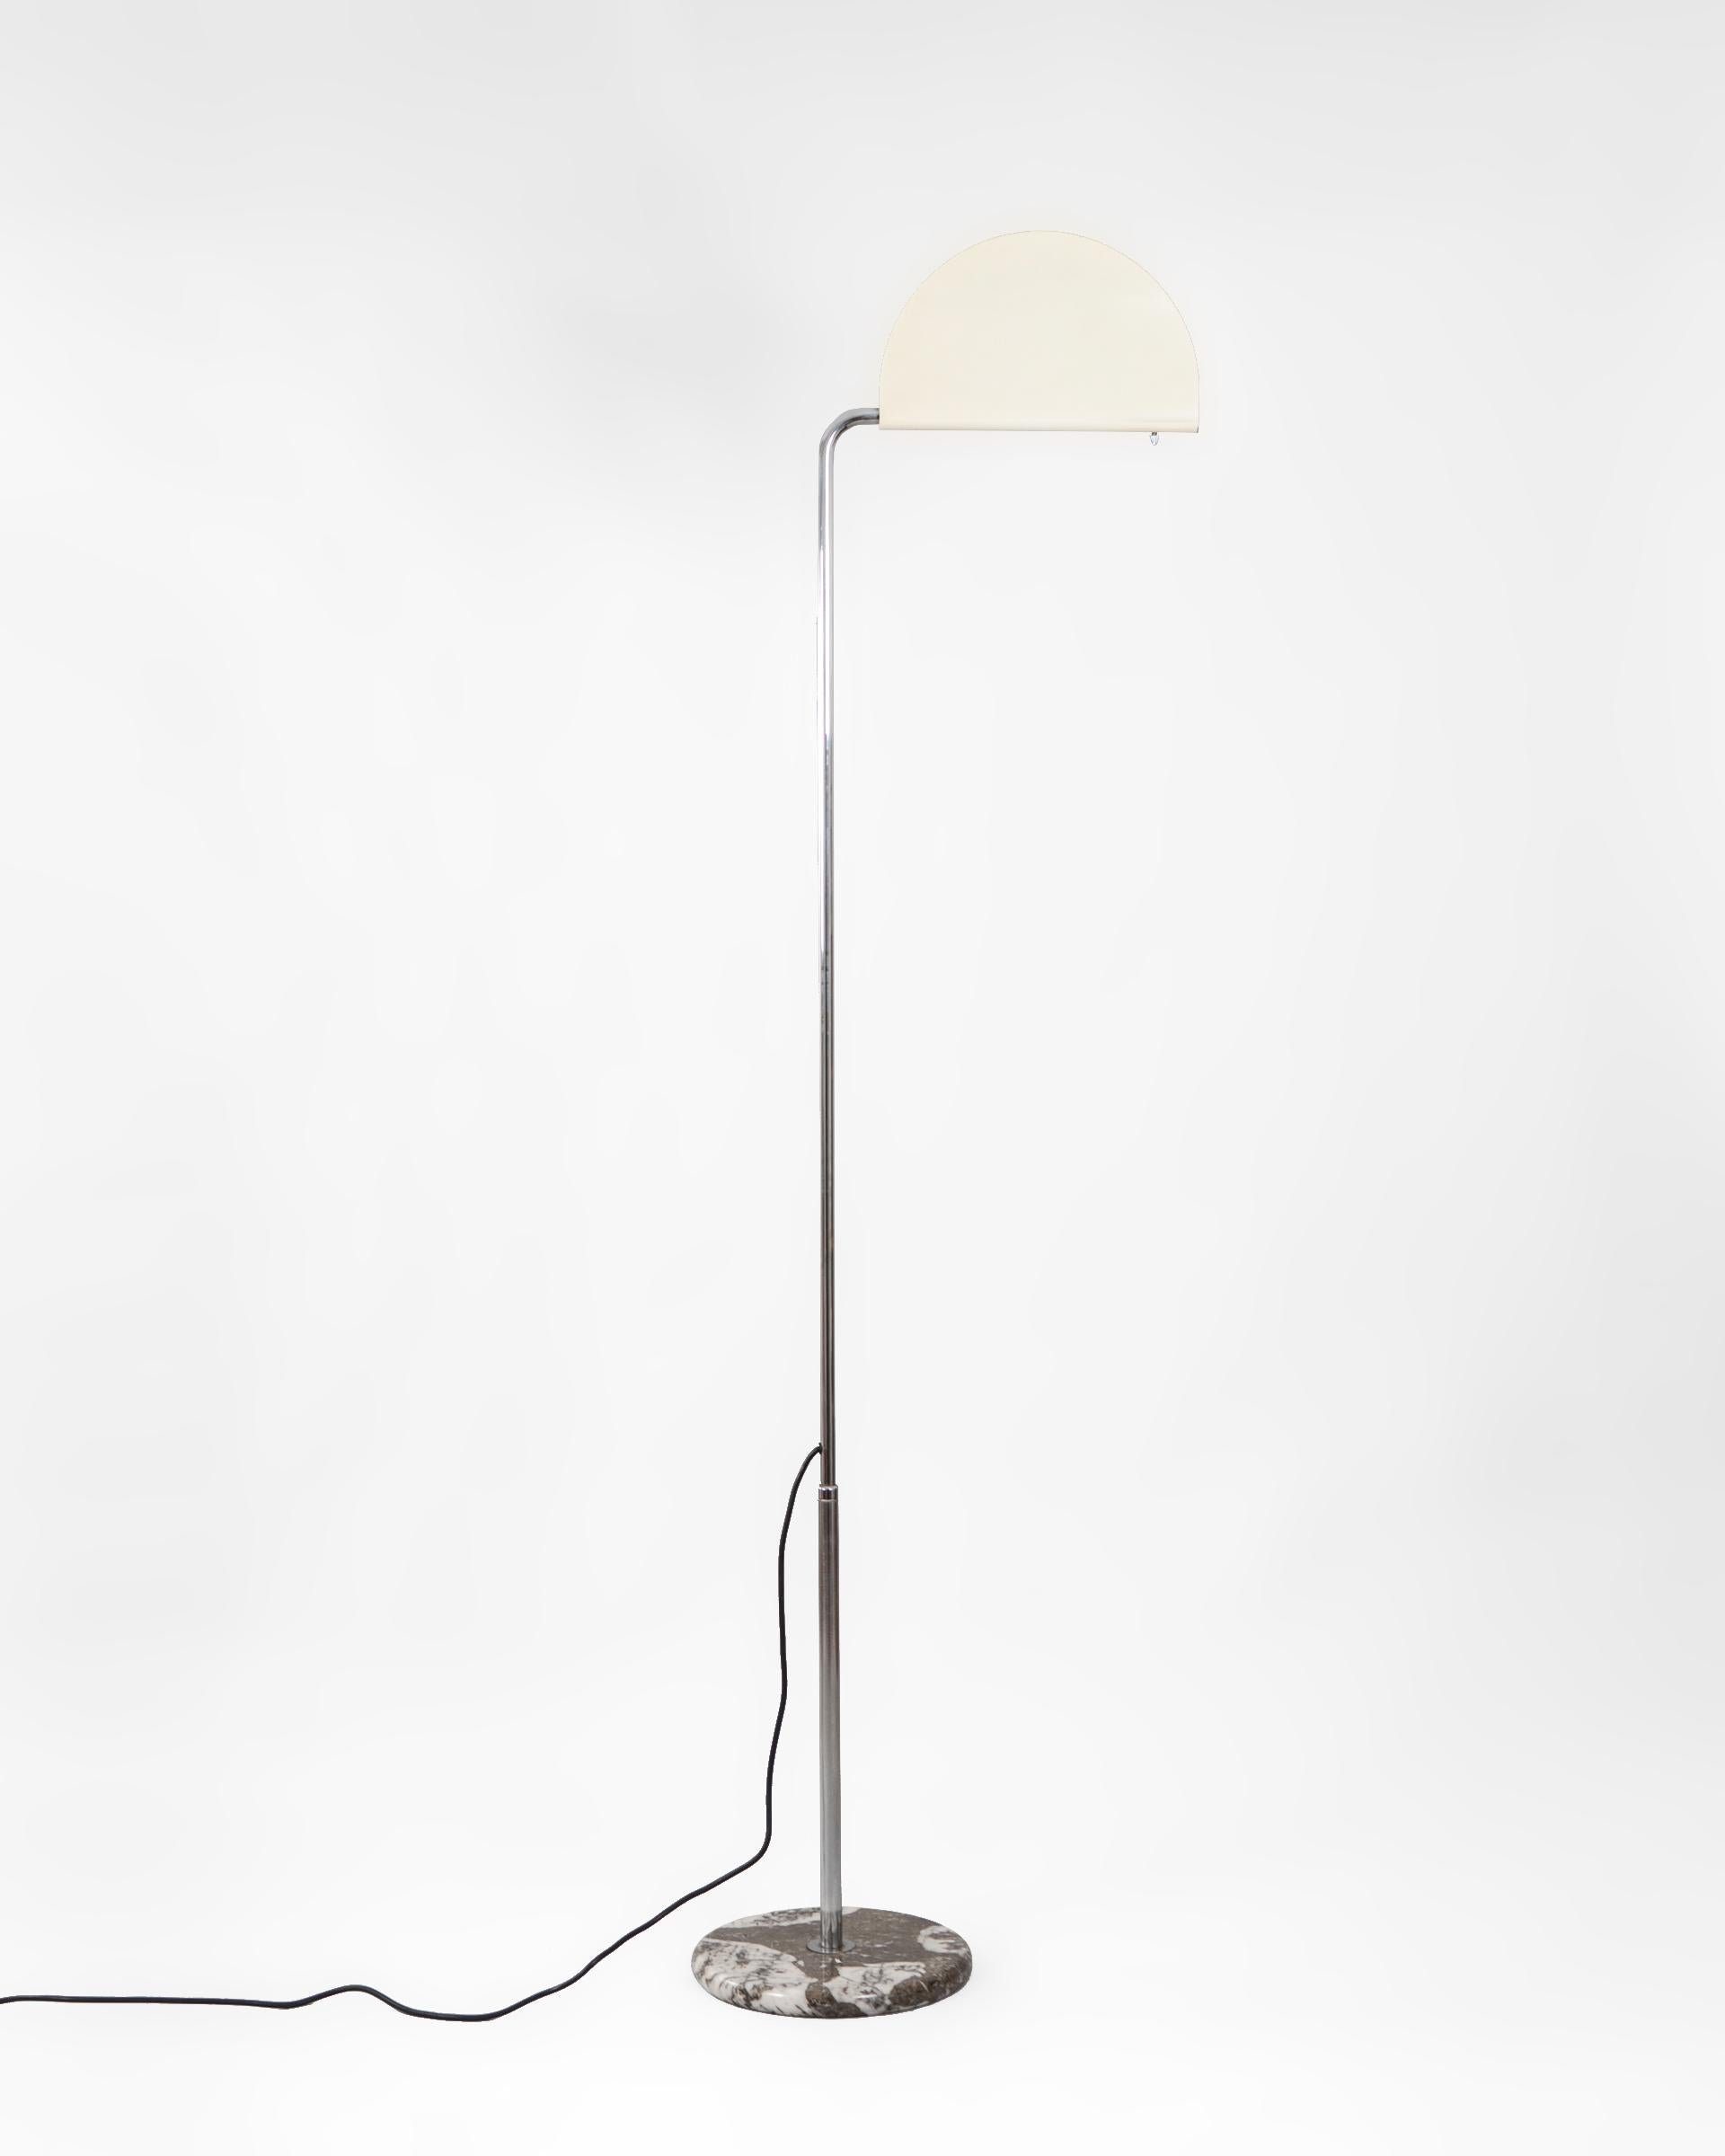 Lámpara de pie modelo Mezza Luna diseñada en 1974 por el italiano Bruno Gecchelin. Se produjo en los años posteriores por la firma Skipper and Pollux en Milán.

El diseño se compone de una estructura de acero tubular cromado, una base de marmol y